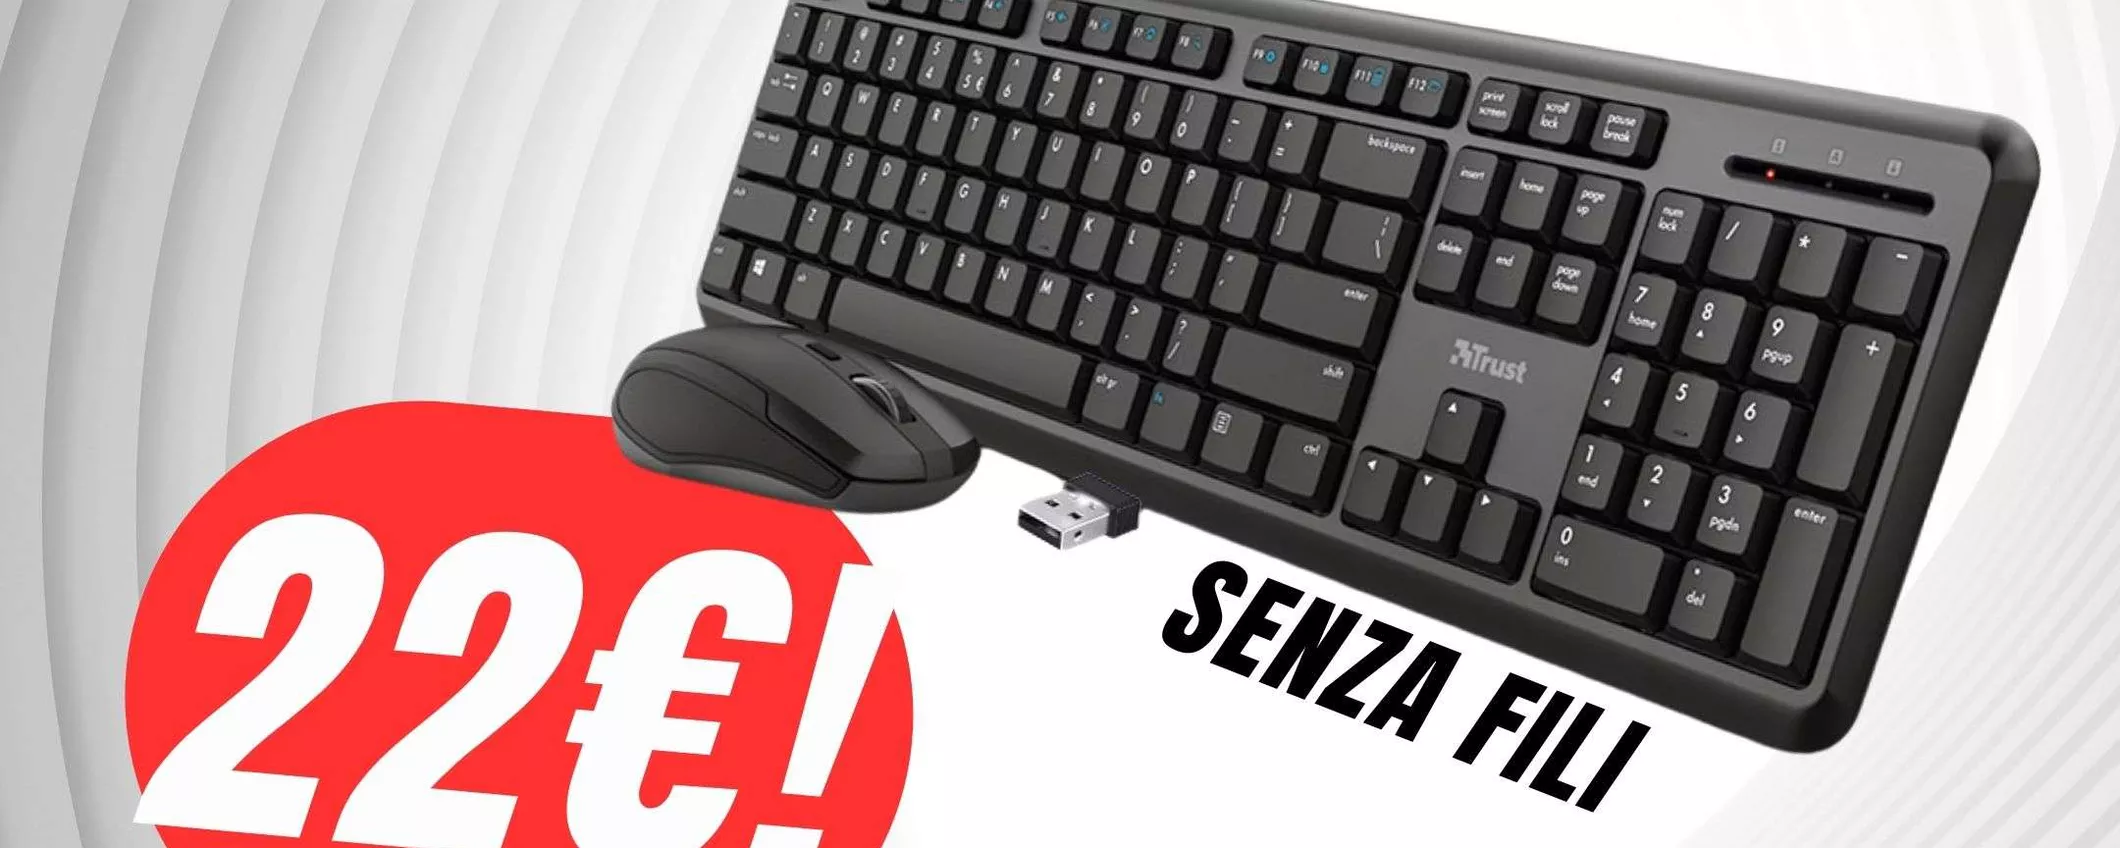 Il kit Trust con Tastiera e Mouse wireless costa solo 22€!